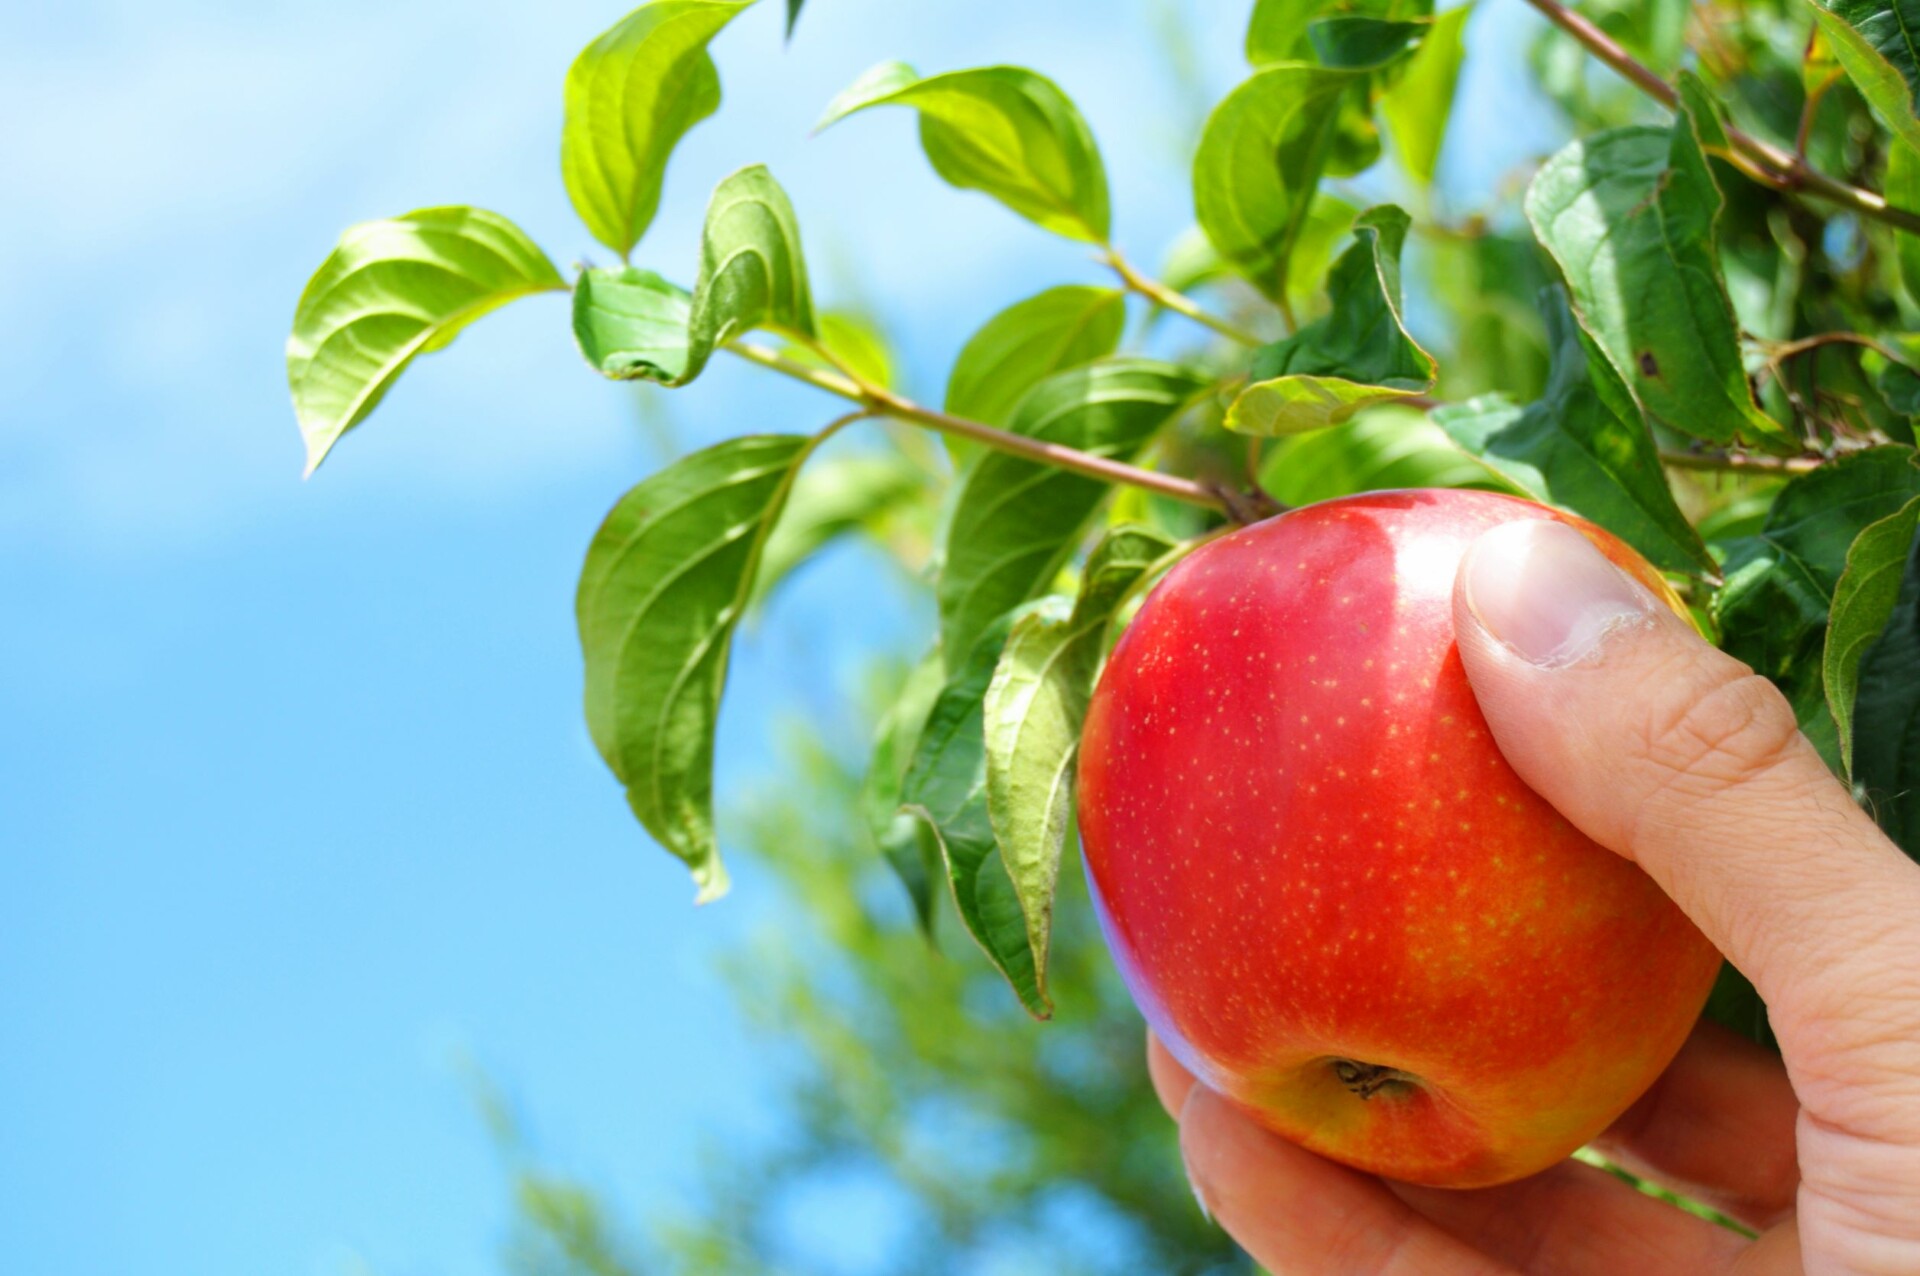 Dürfen Vermieter Obst ernten? 3 wichtige Fakten